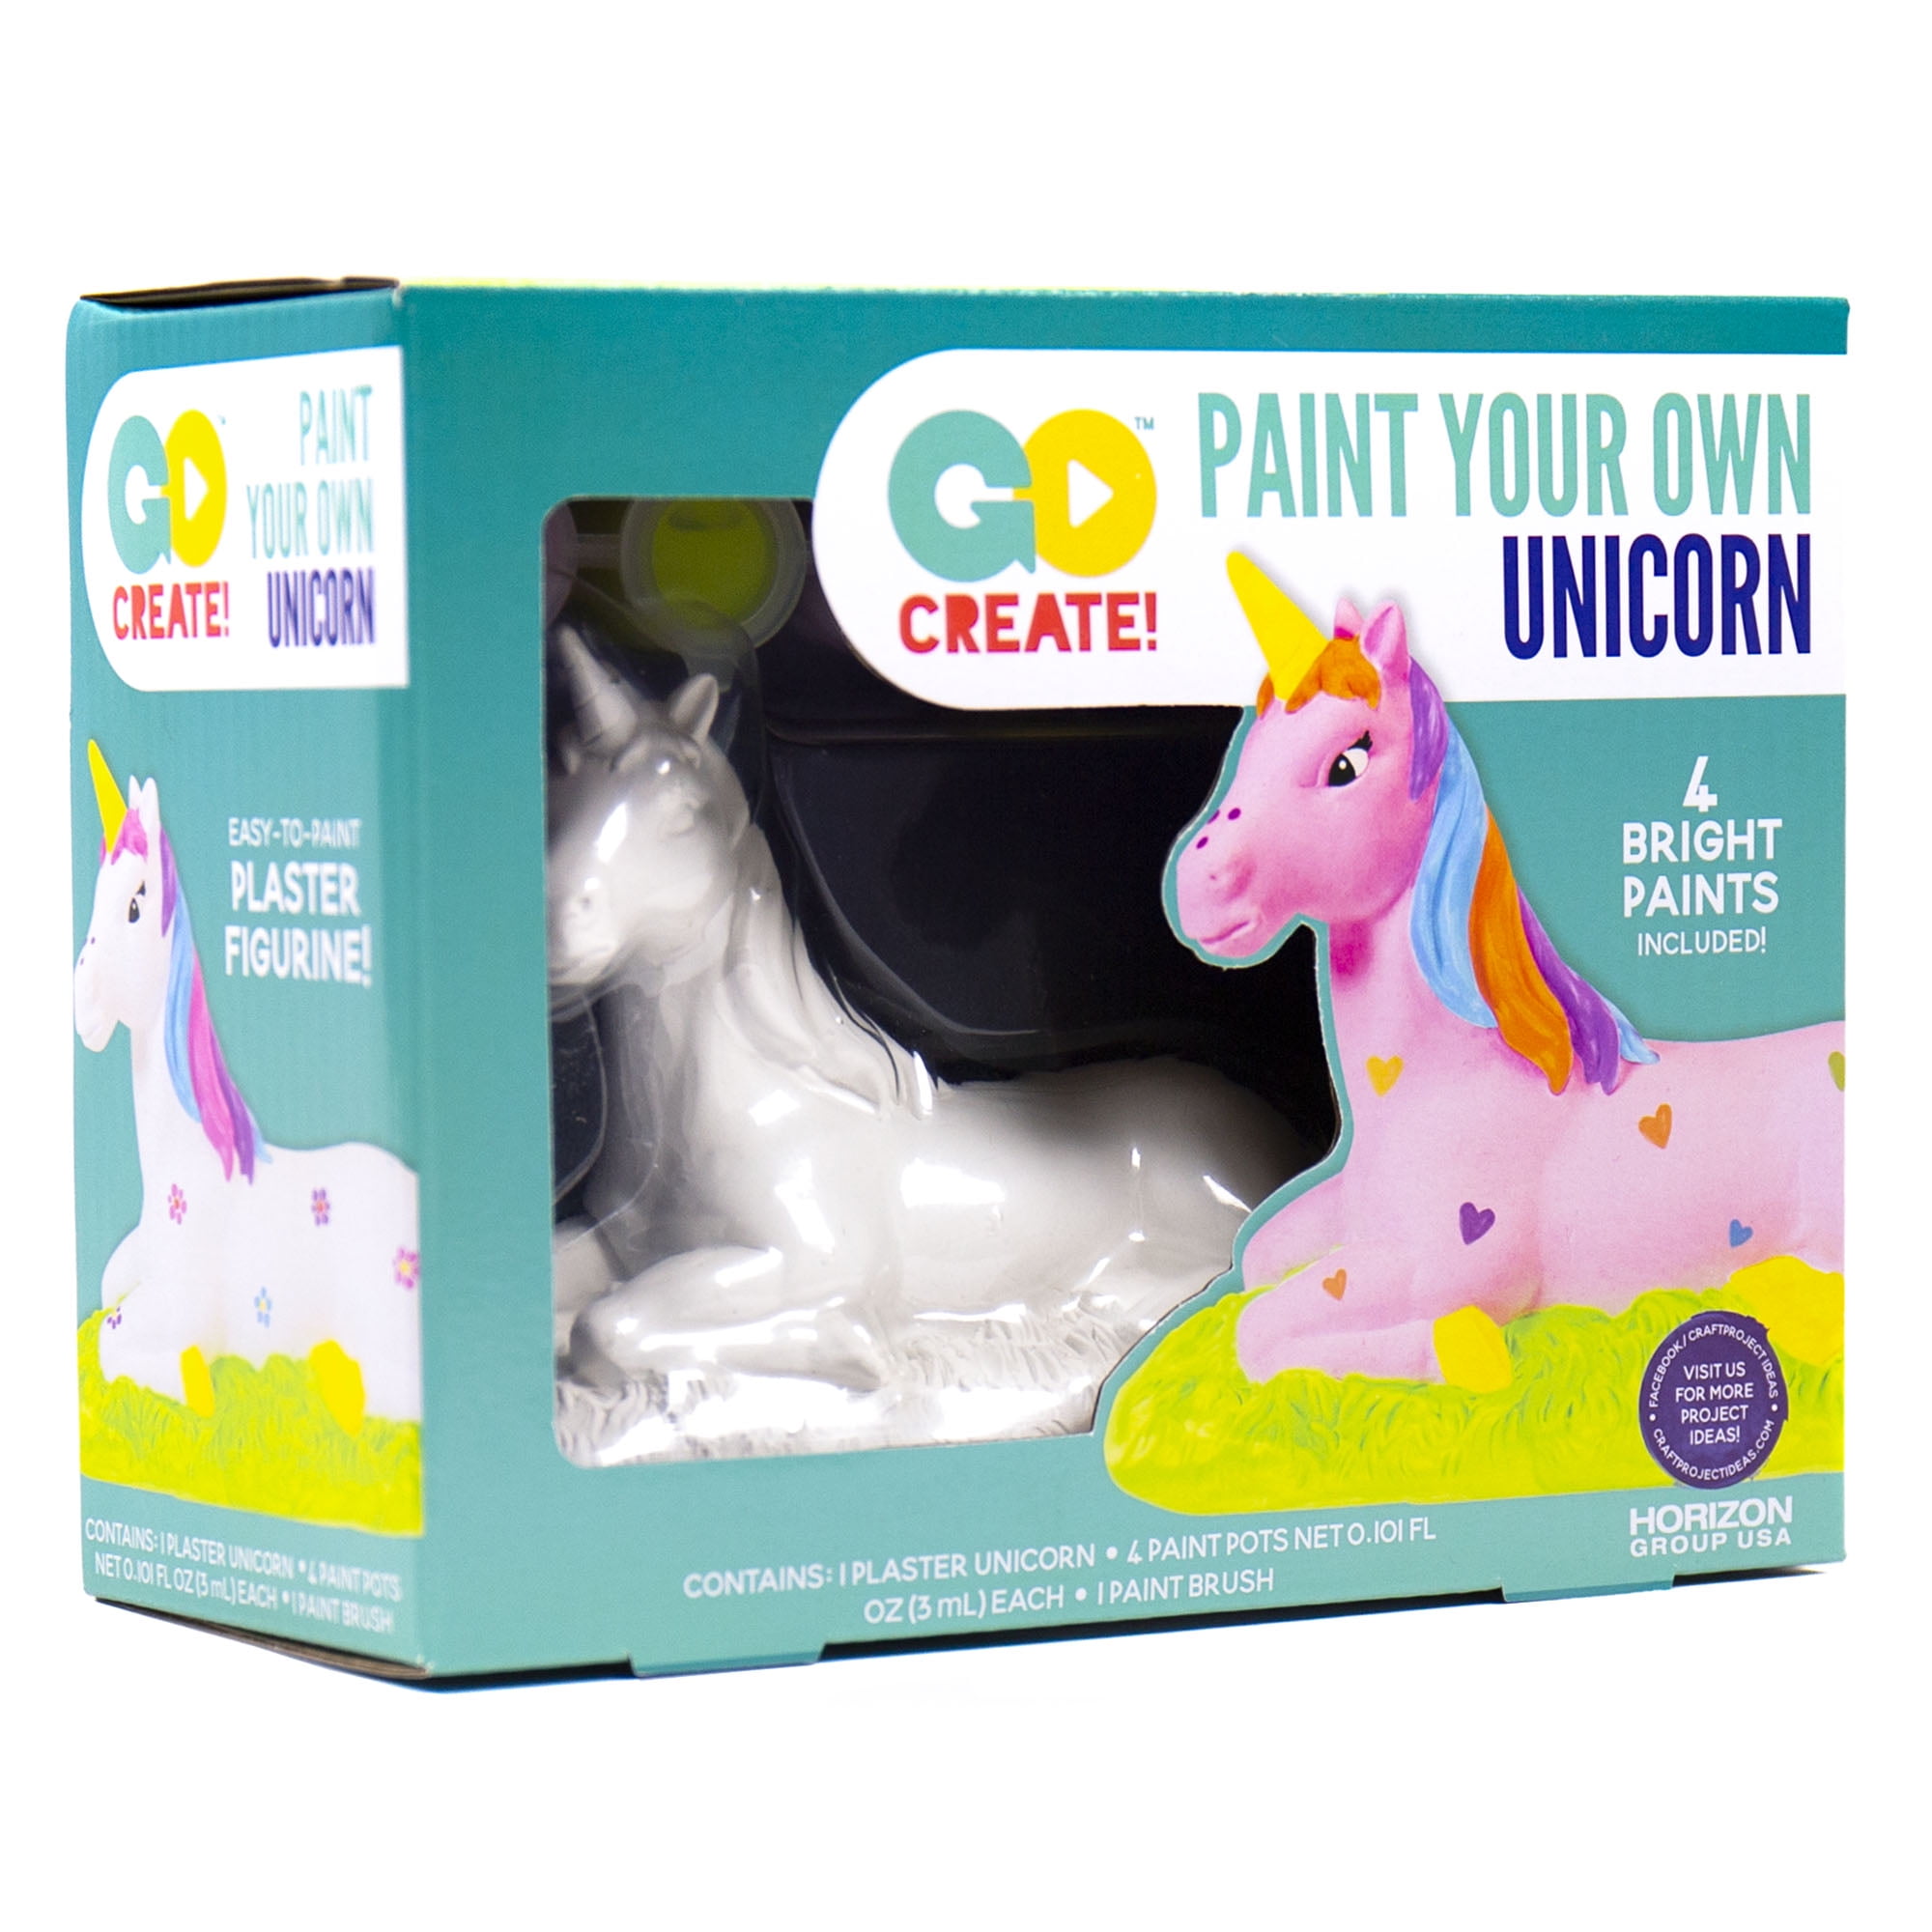 Golray Paint Your Own Unicorn Painting Kit Unicorn Hungary